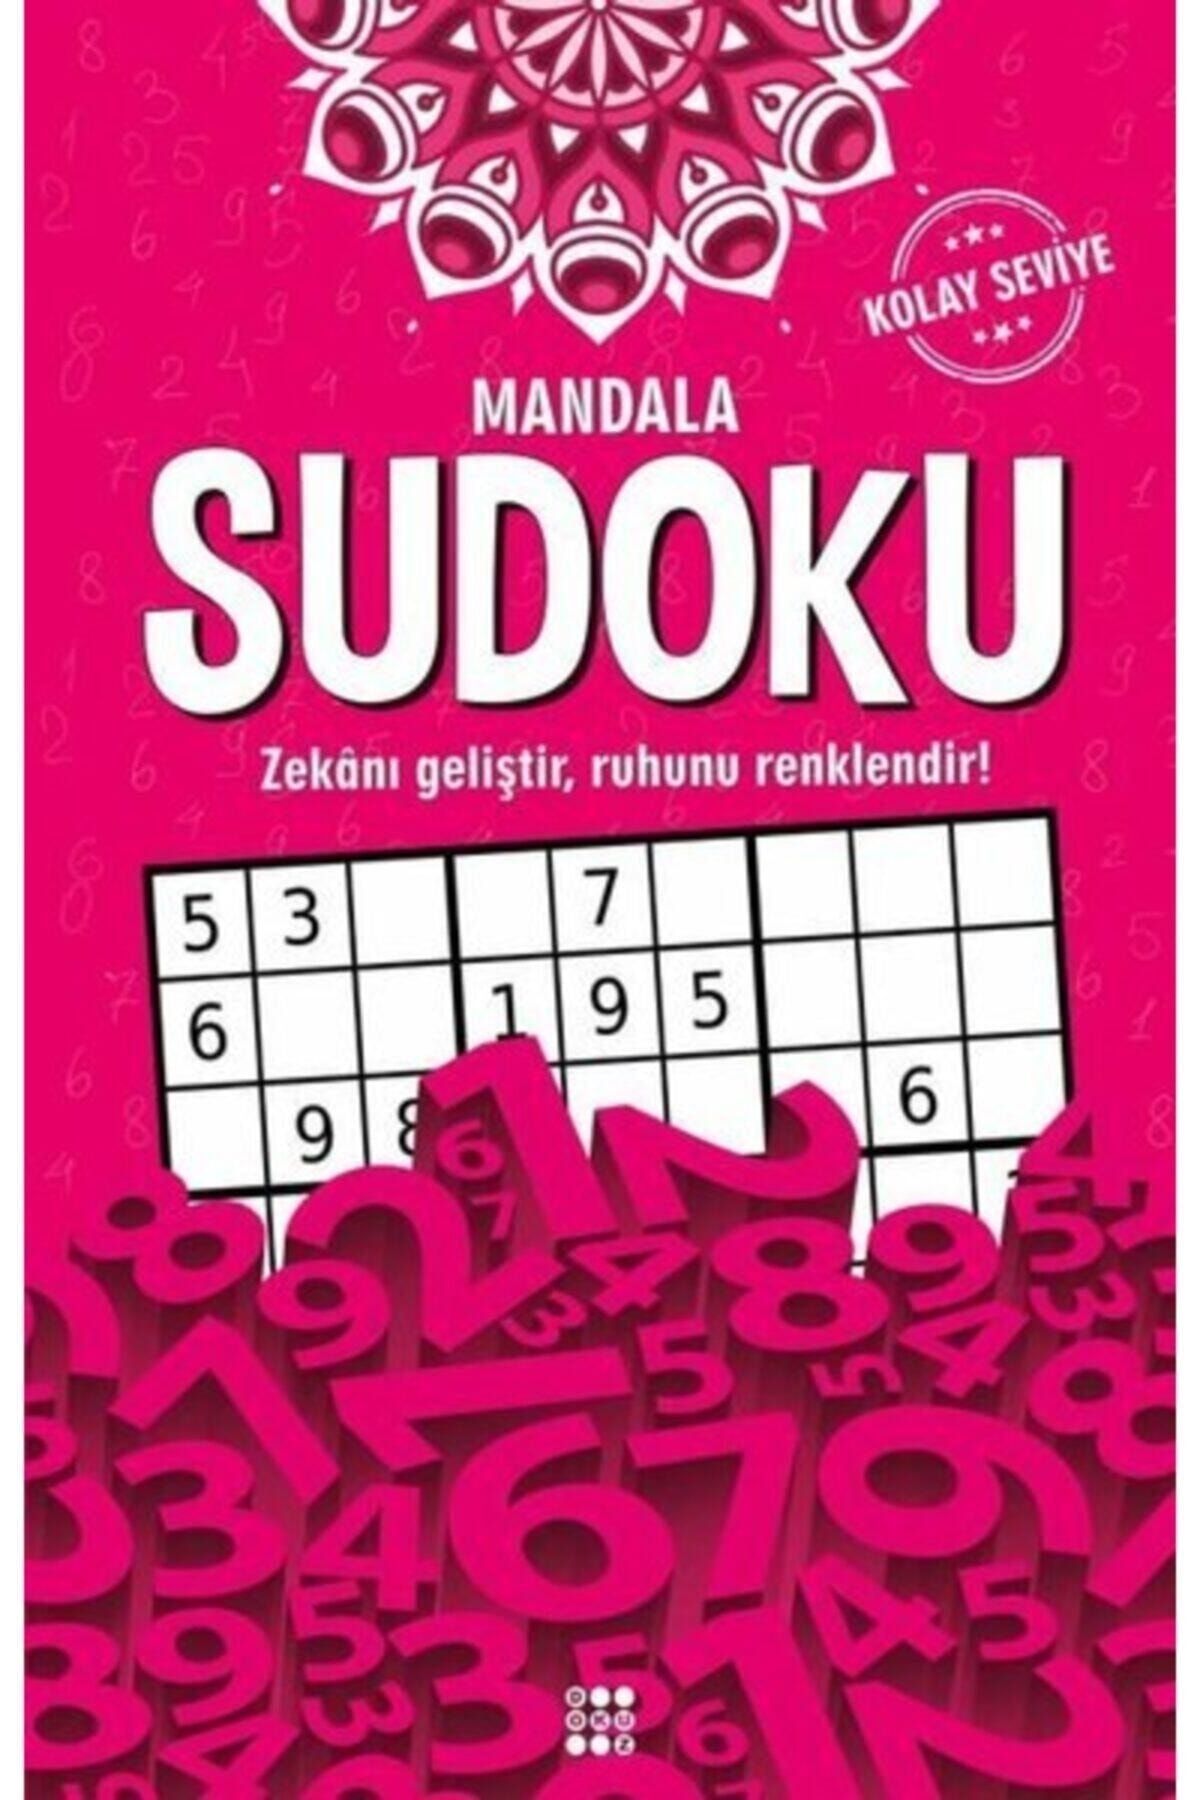 Dokuz Yayınları Mandala Sudoku – Kolay Seviye